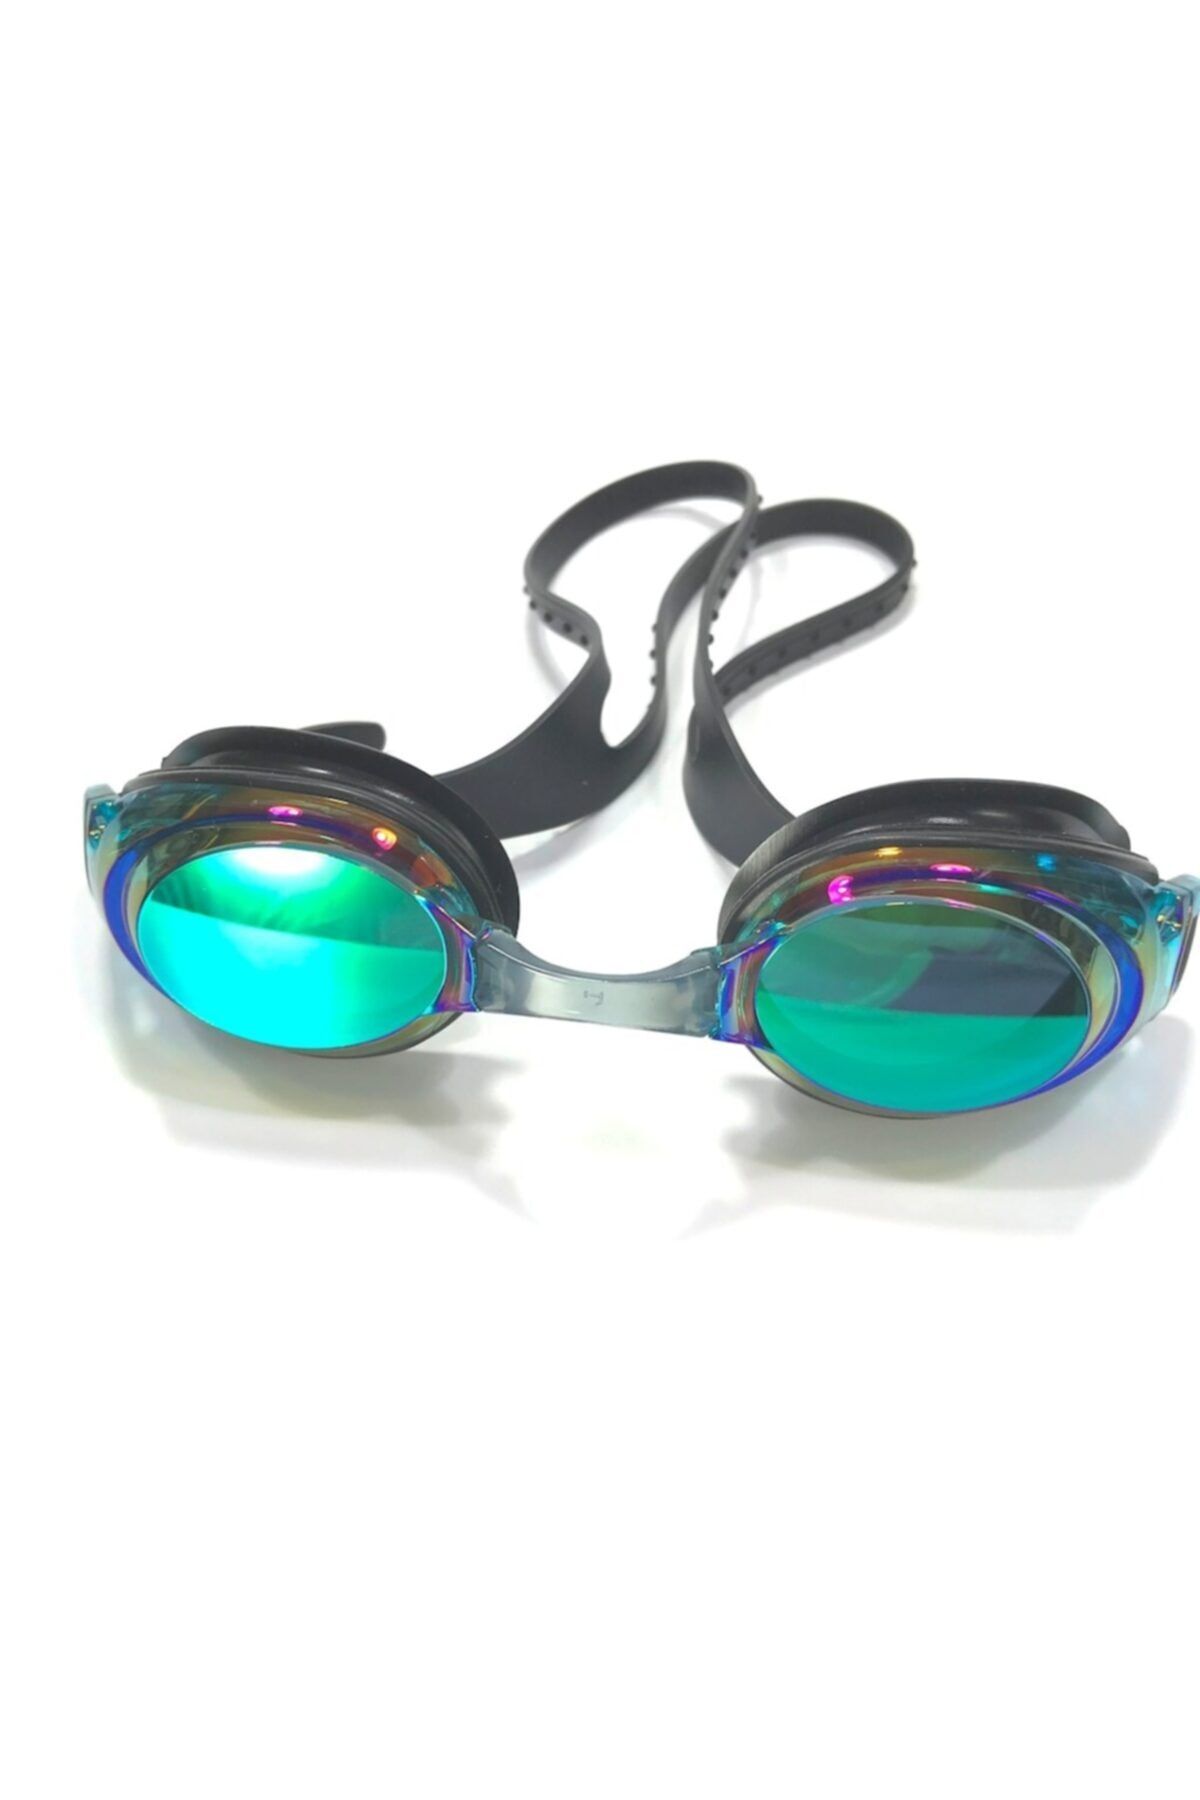 Snob Mıror Aynalı Slikon Yüzücü Gözlüğü Mc-600